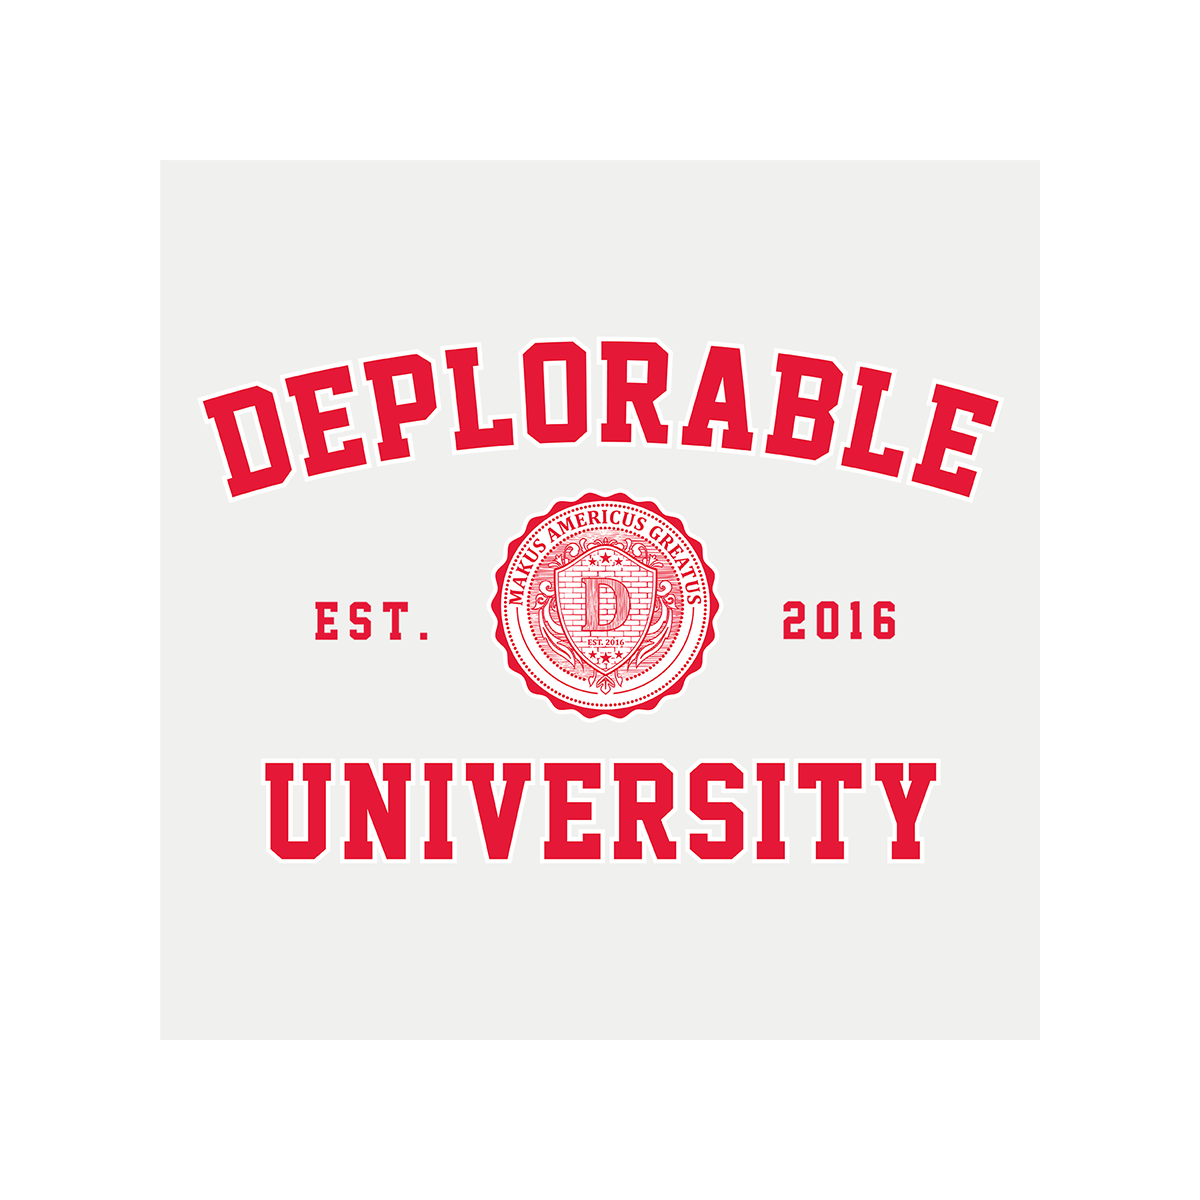 Deplorable University T-Shirt - White